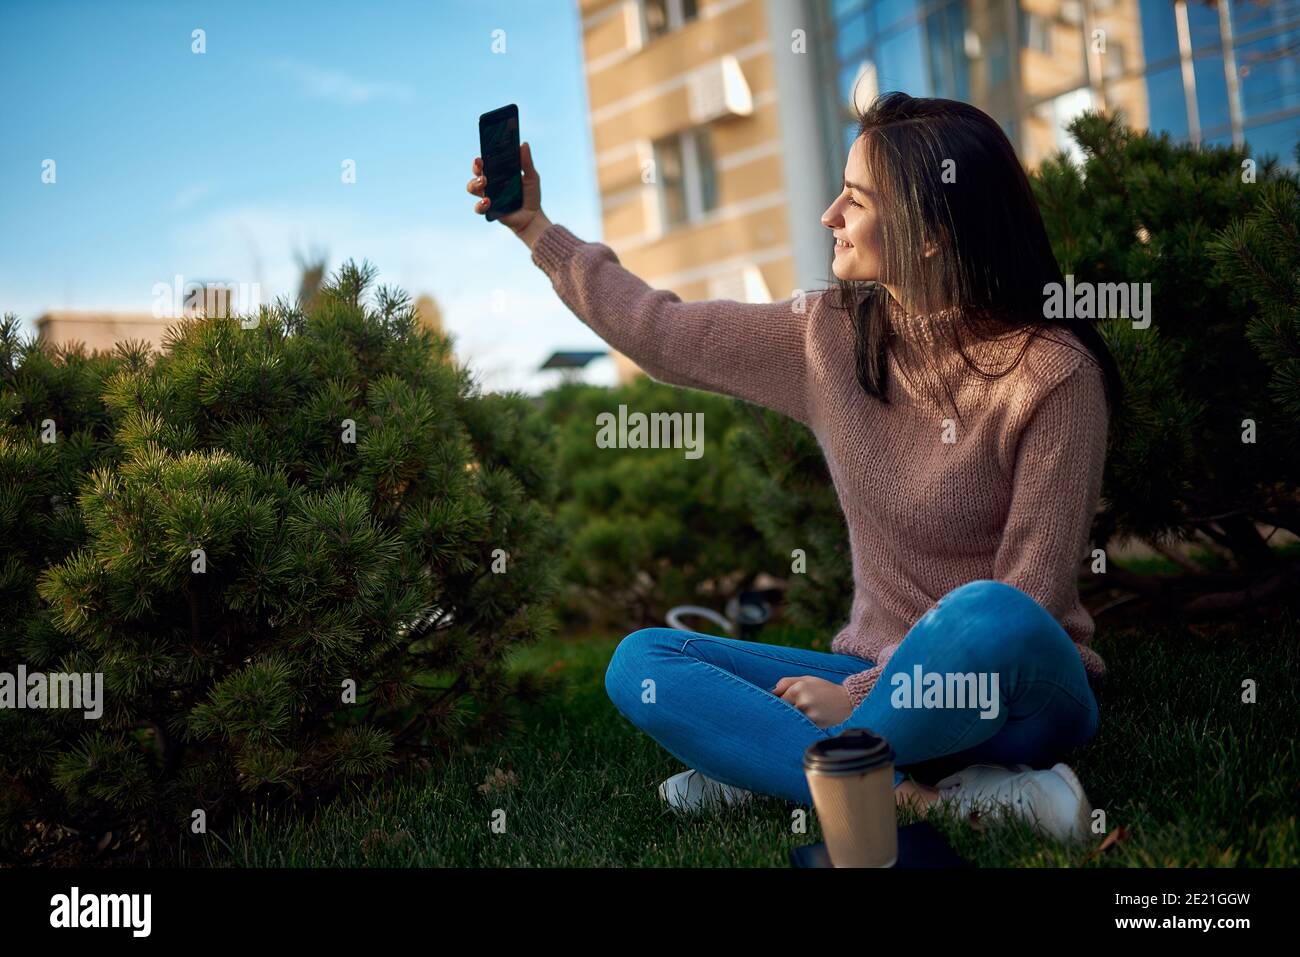 Joven hermosa mujer de pelo oscuro tomando una imagen conmovedora de sí misma y sentarse al aire libre Foto de stock